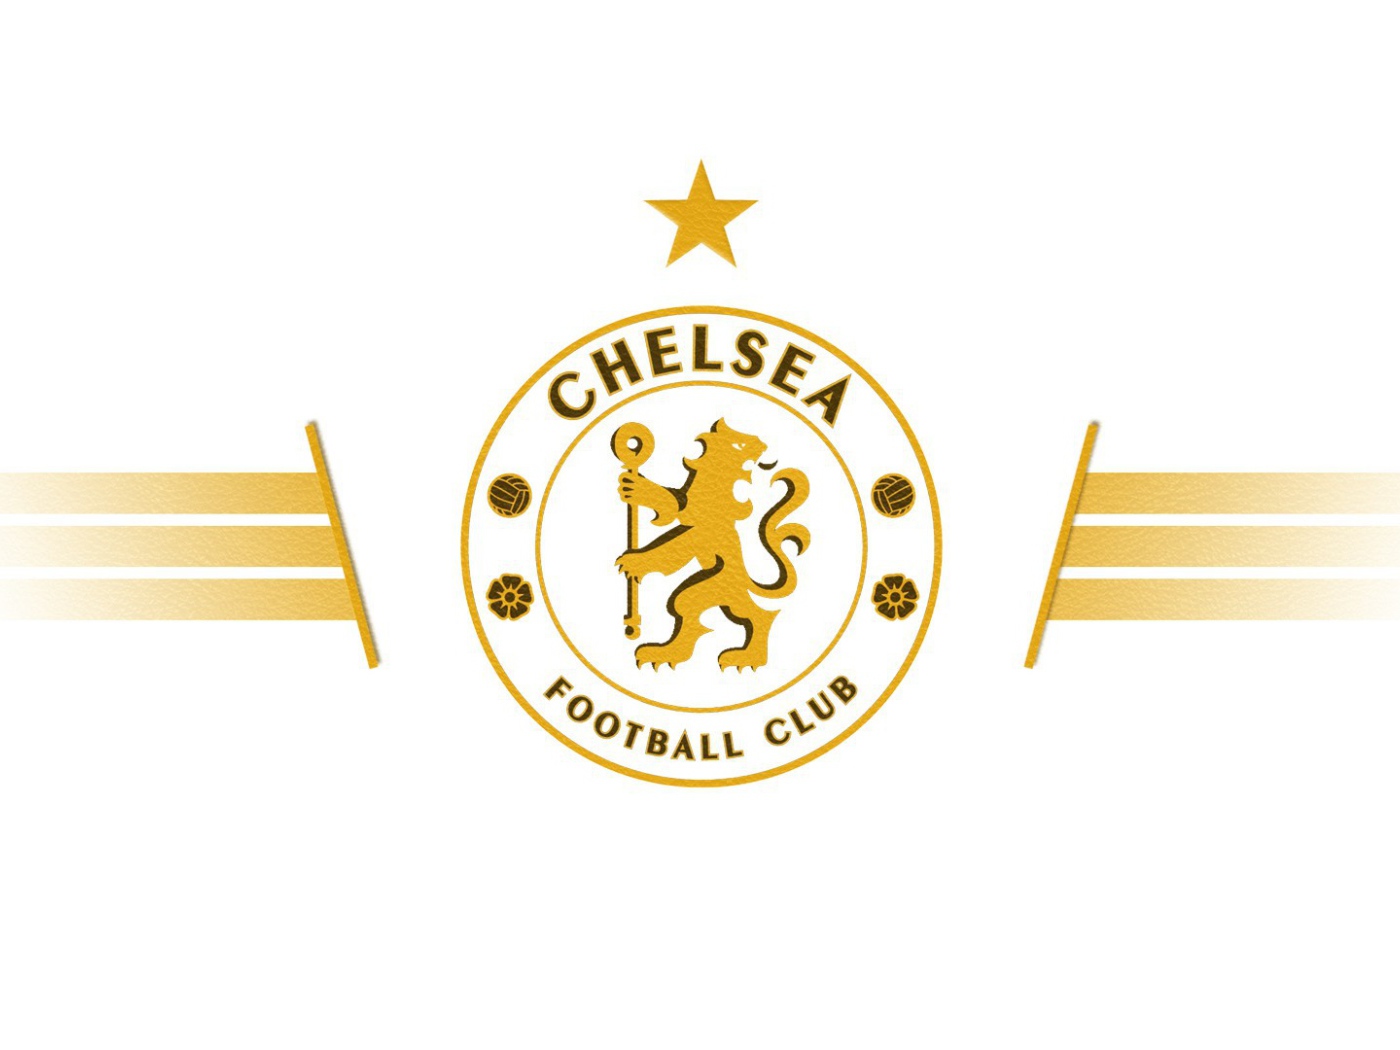 Футбольный клуб Челси, логотип золотой на белом